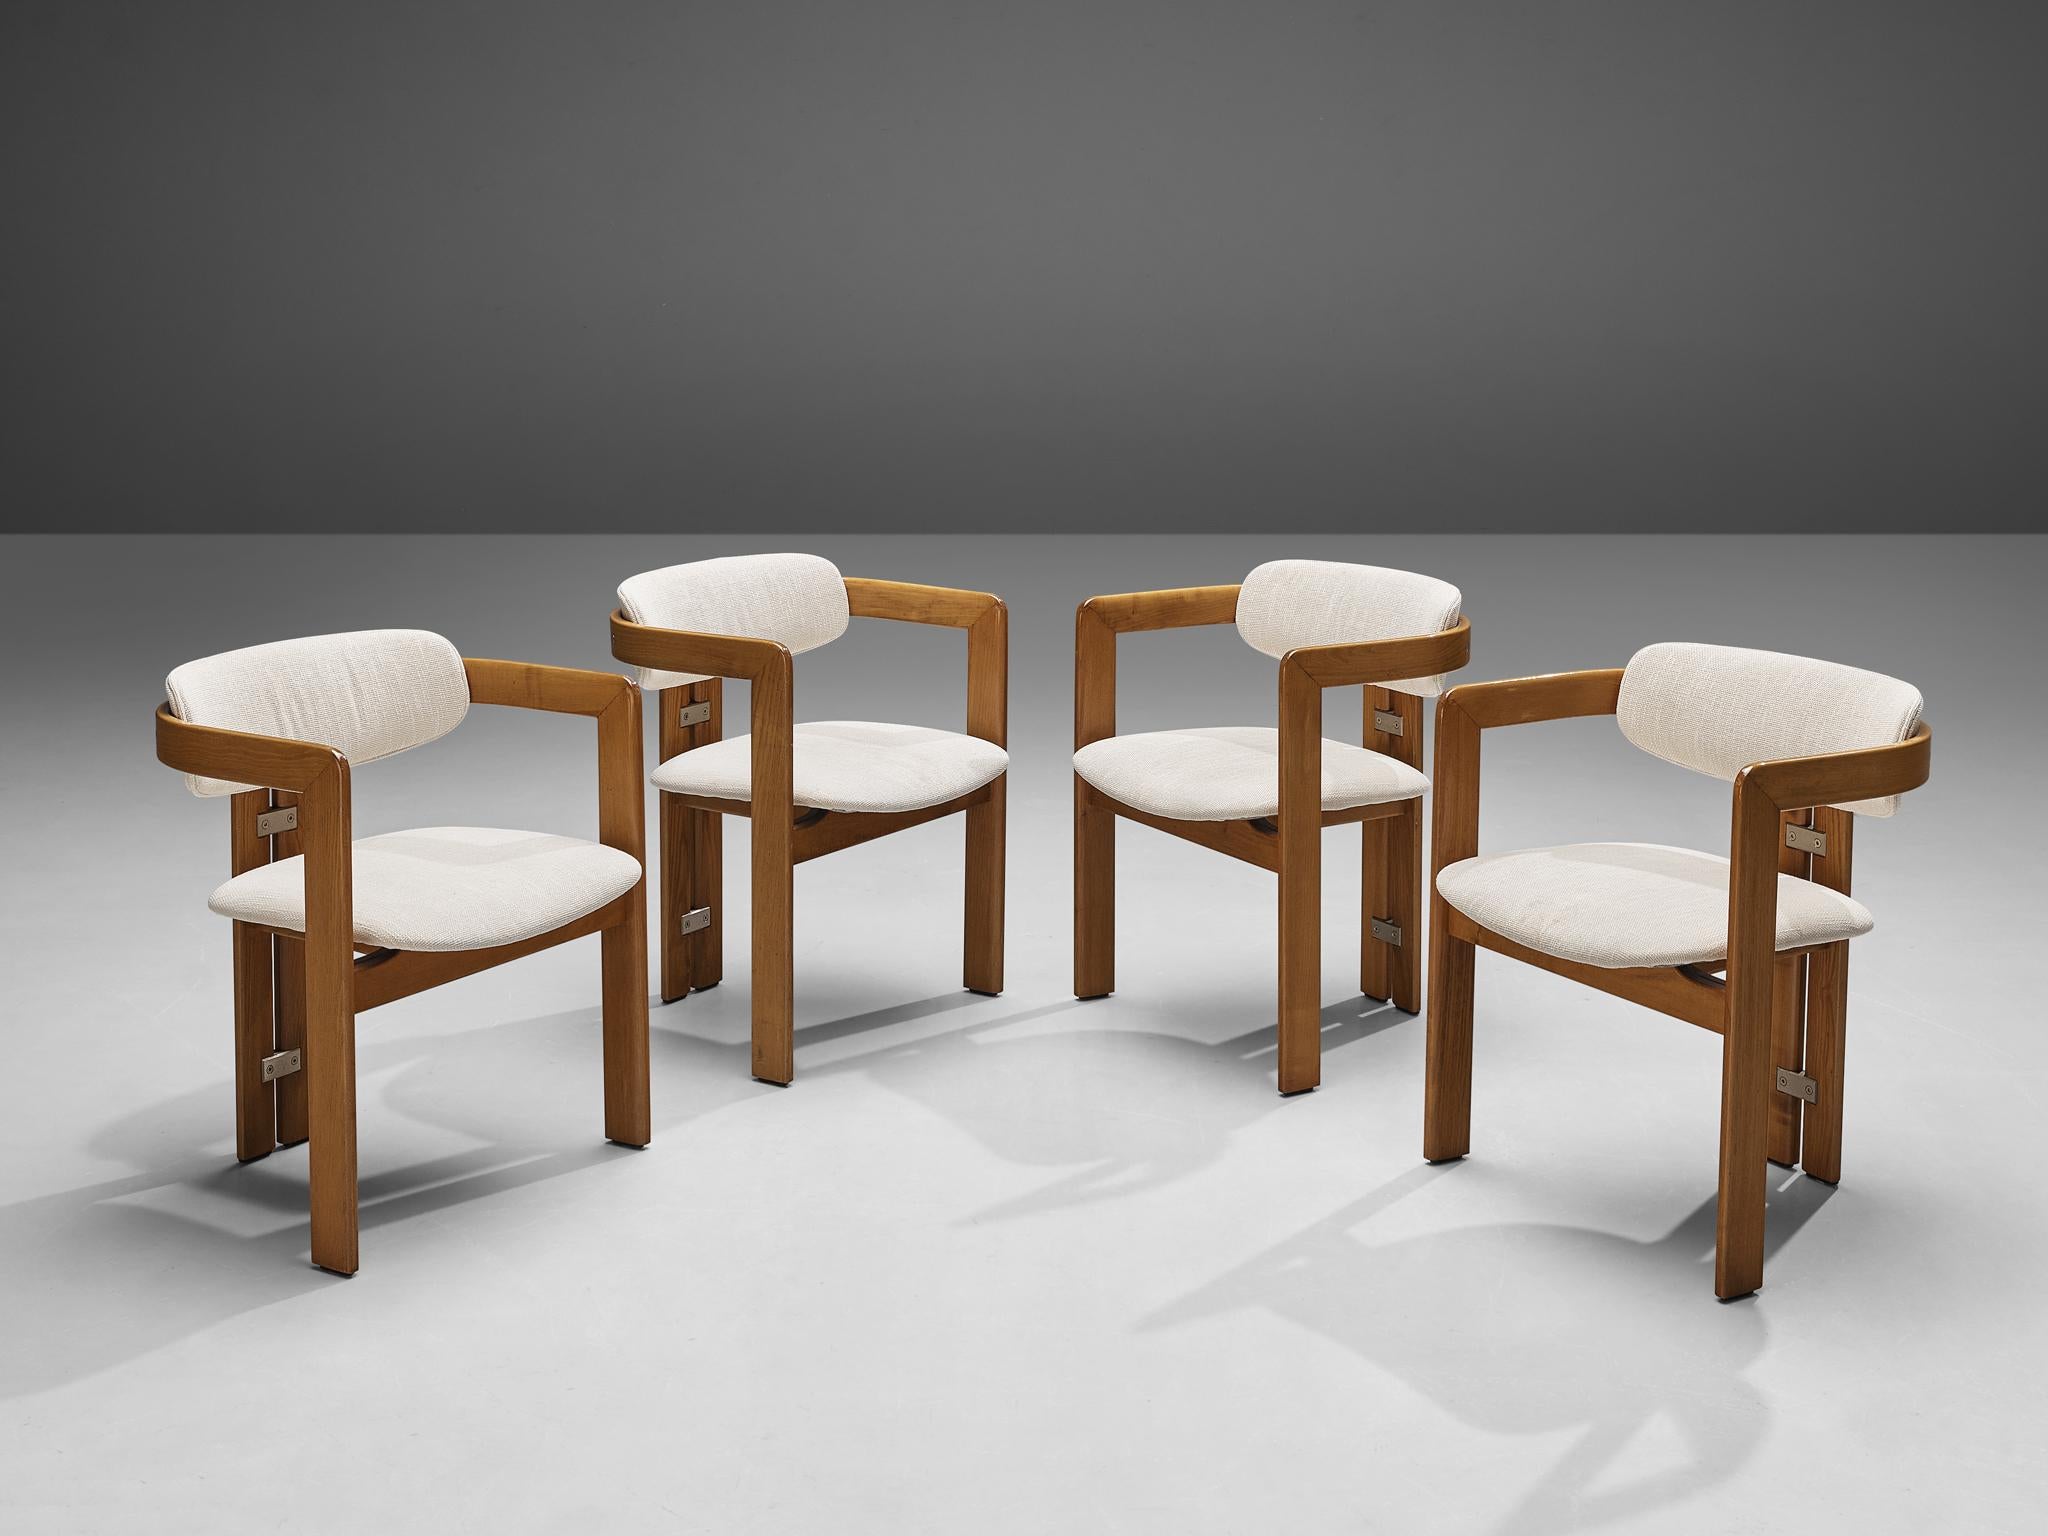 Augusto Savini pour Pozzi:: chaises de salle à manger modèle 'Pamplona':: hêtre:: revêtement en tissu:: aluminium:: Italie:: conçu en 1965 

Fauteuils en bois et revêtement en tissu blanc. Un design caractéristique:: simpliste mais très fort dans